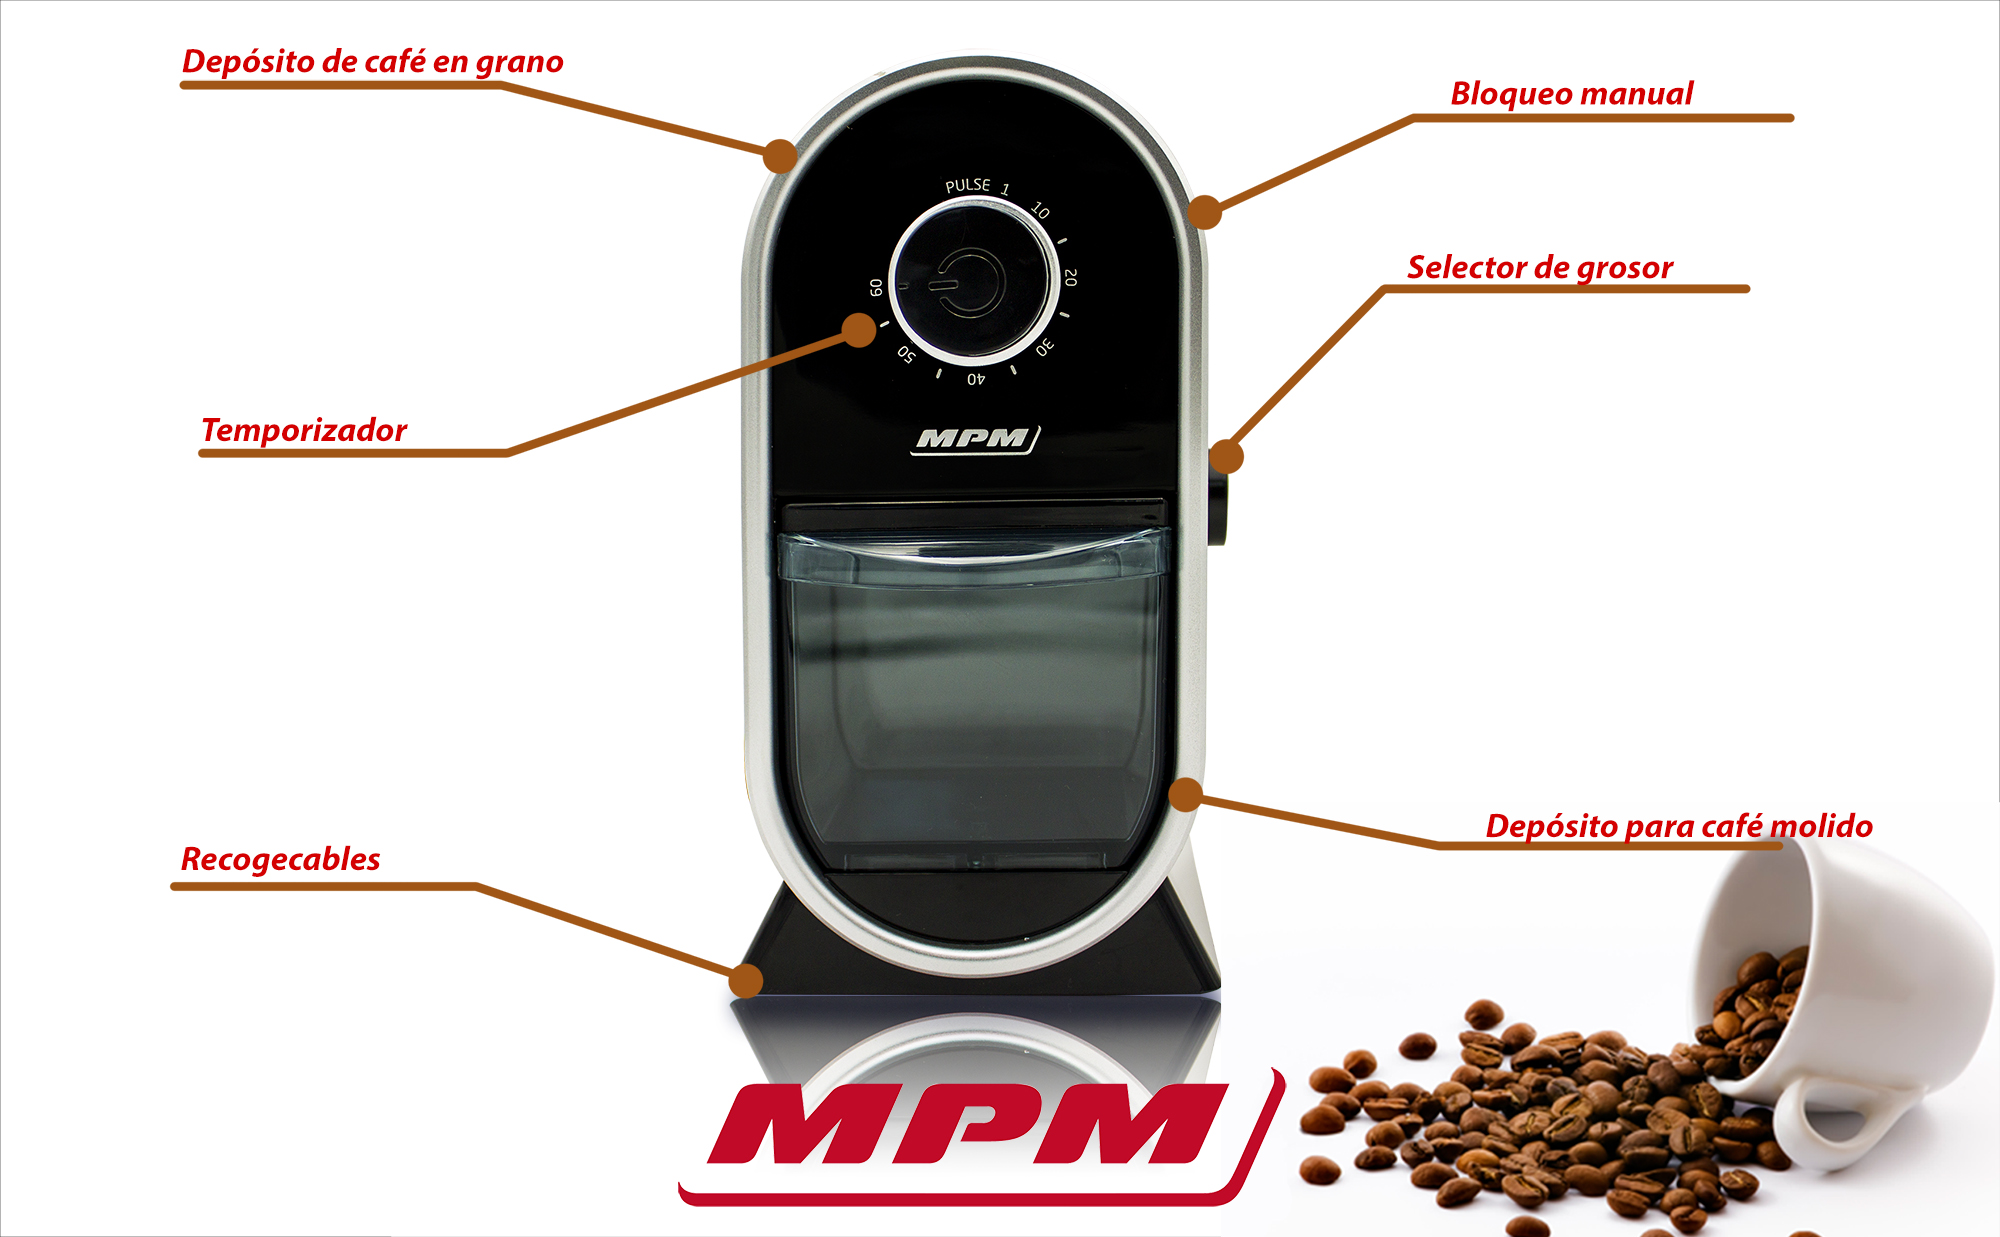 MPM MMK-05 Molinillo Café profesional con sistema muelas, 17 ajustes de molienda, más fino a grueso, temporizador, depósito 60g, 100W